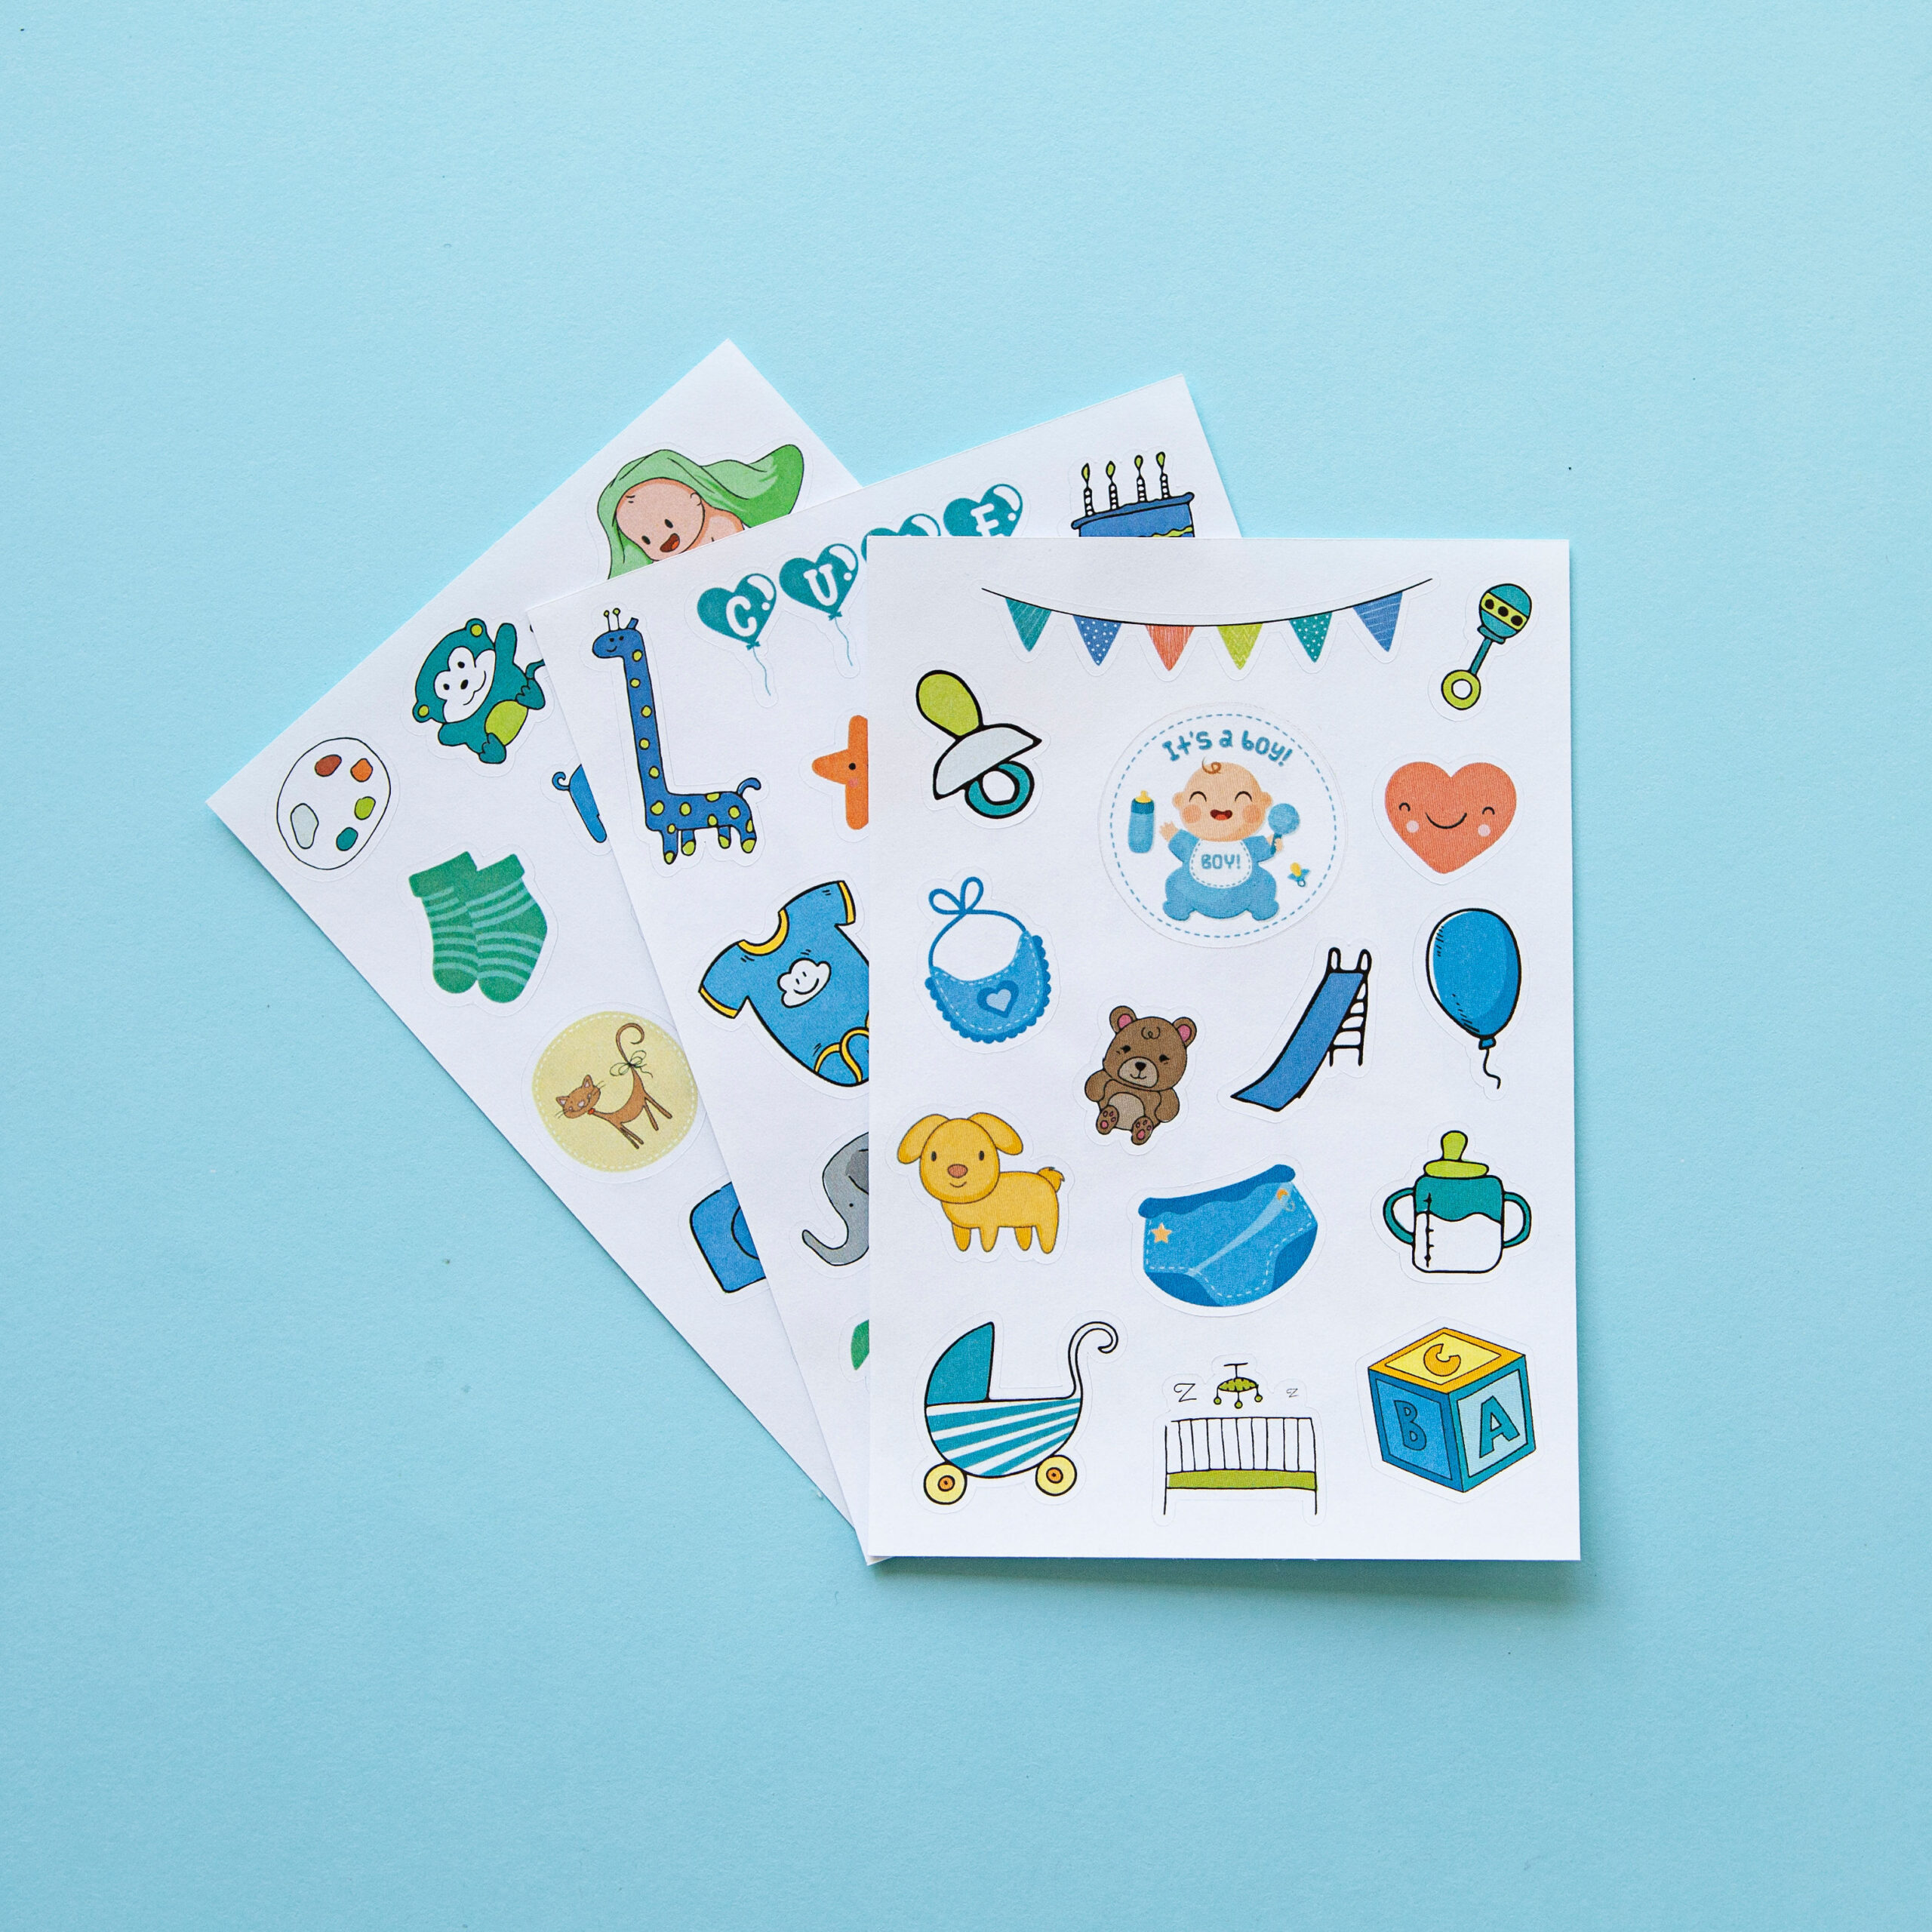 14 Baby Boy Scrapbook Craft Stickers